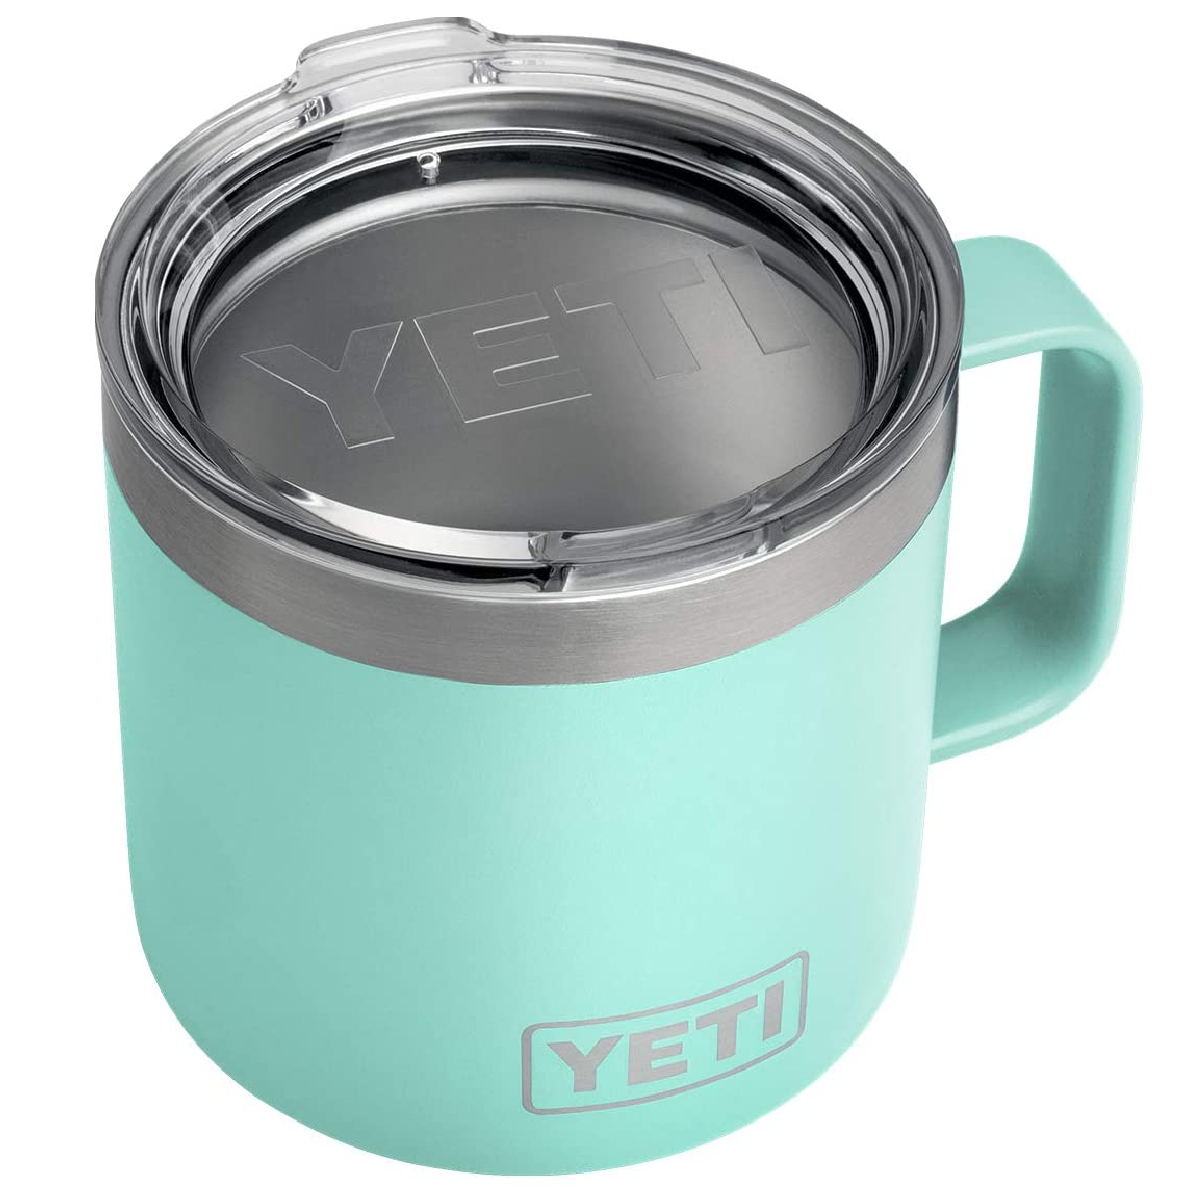 YETI Rambler 14 oz. Stainless Steel Vacuum Insulated Mug